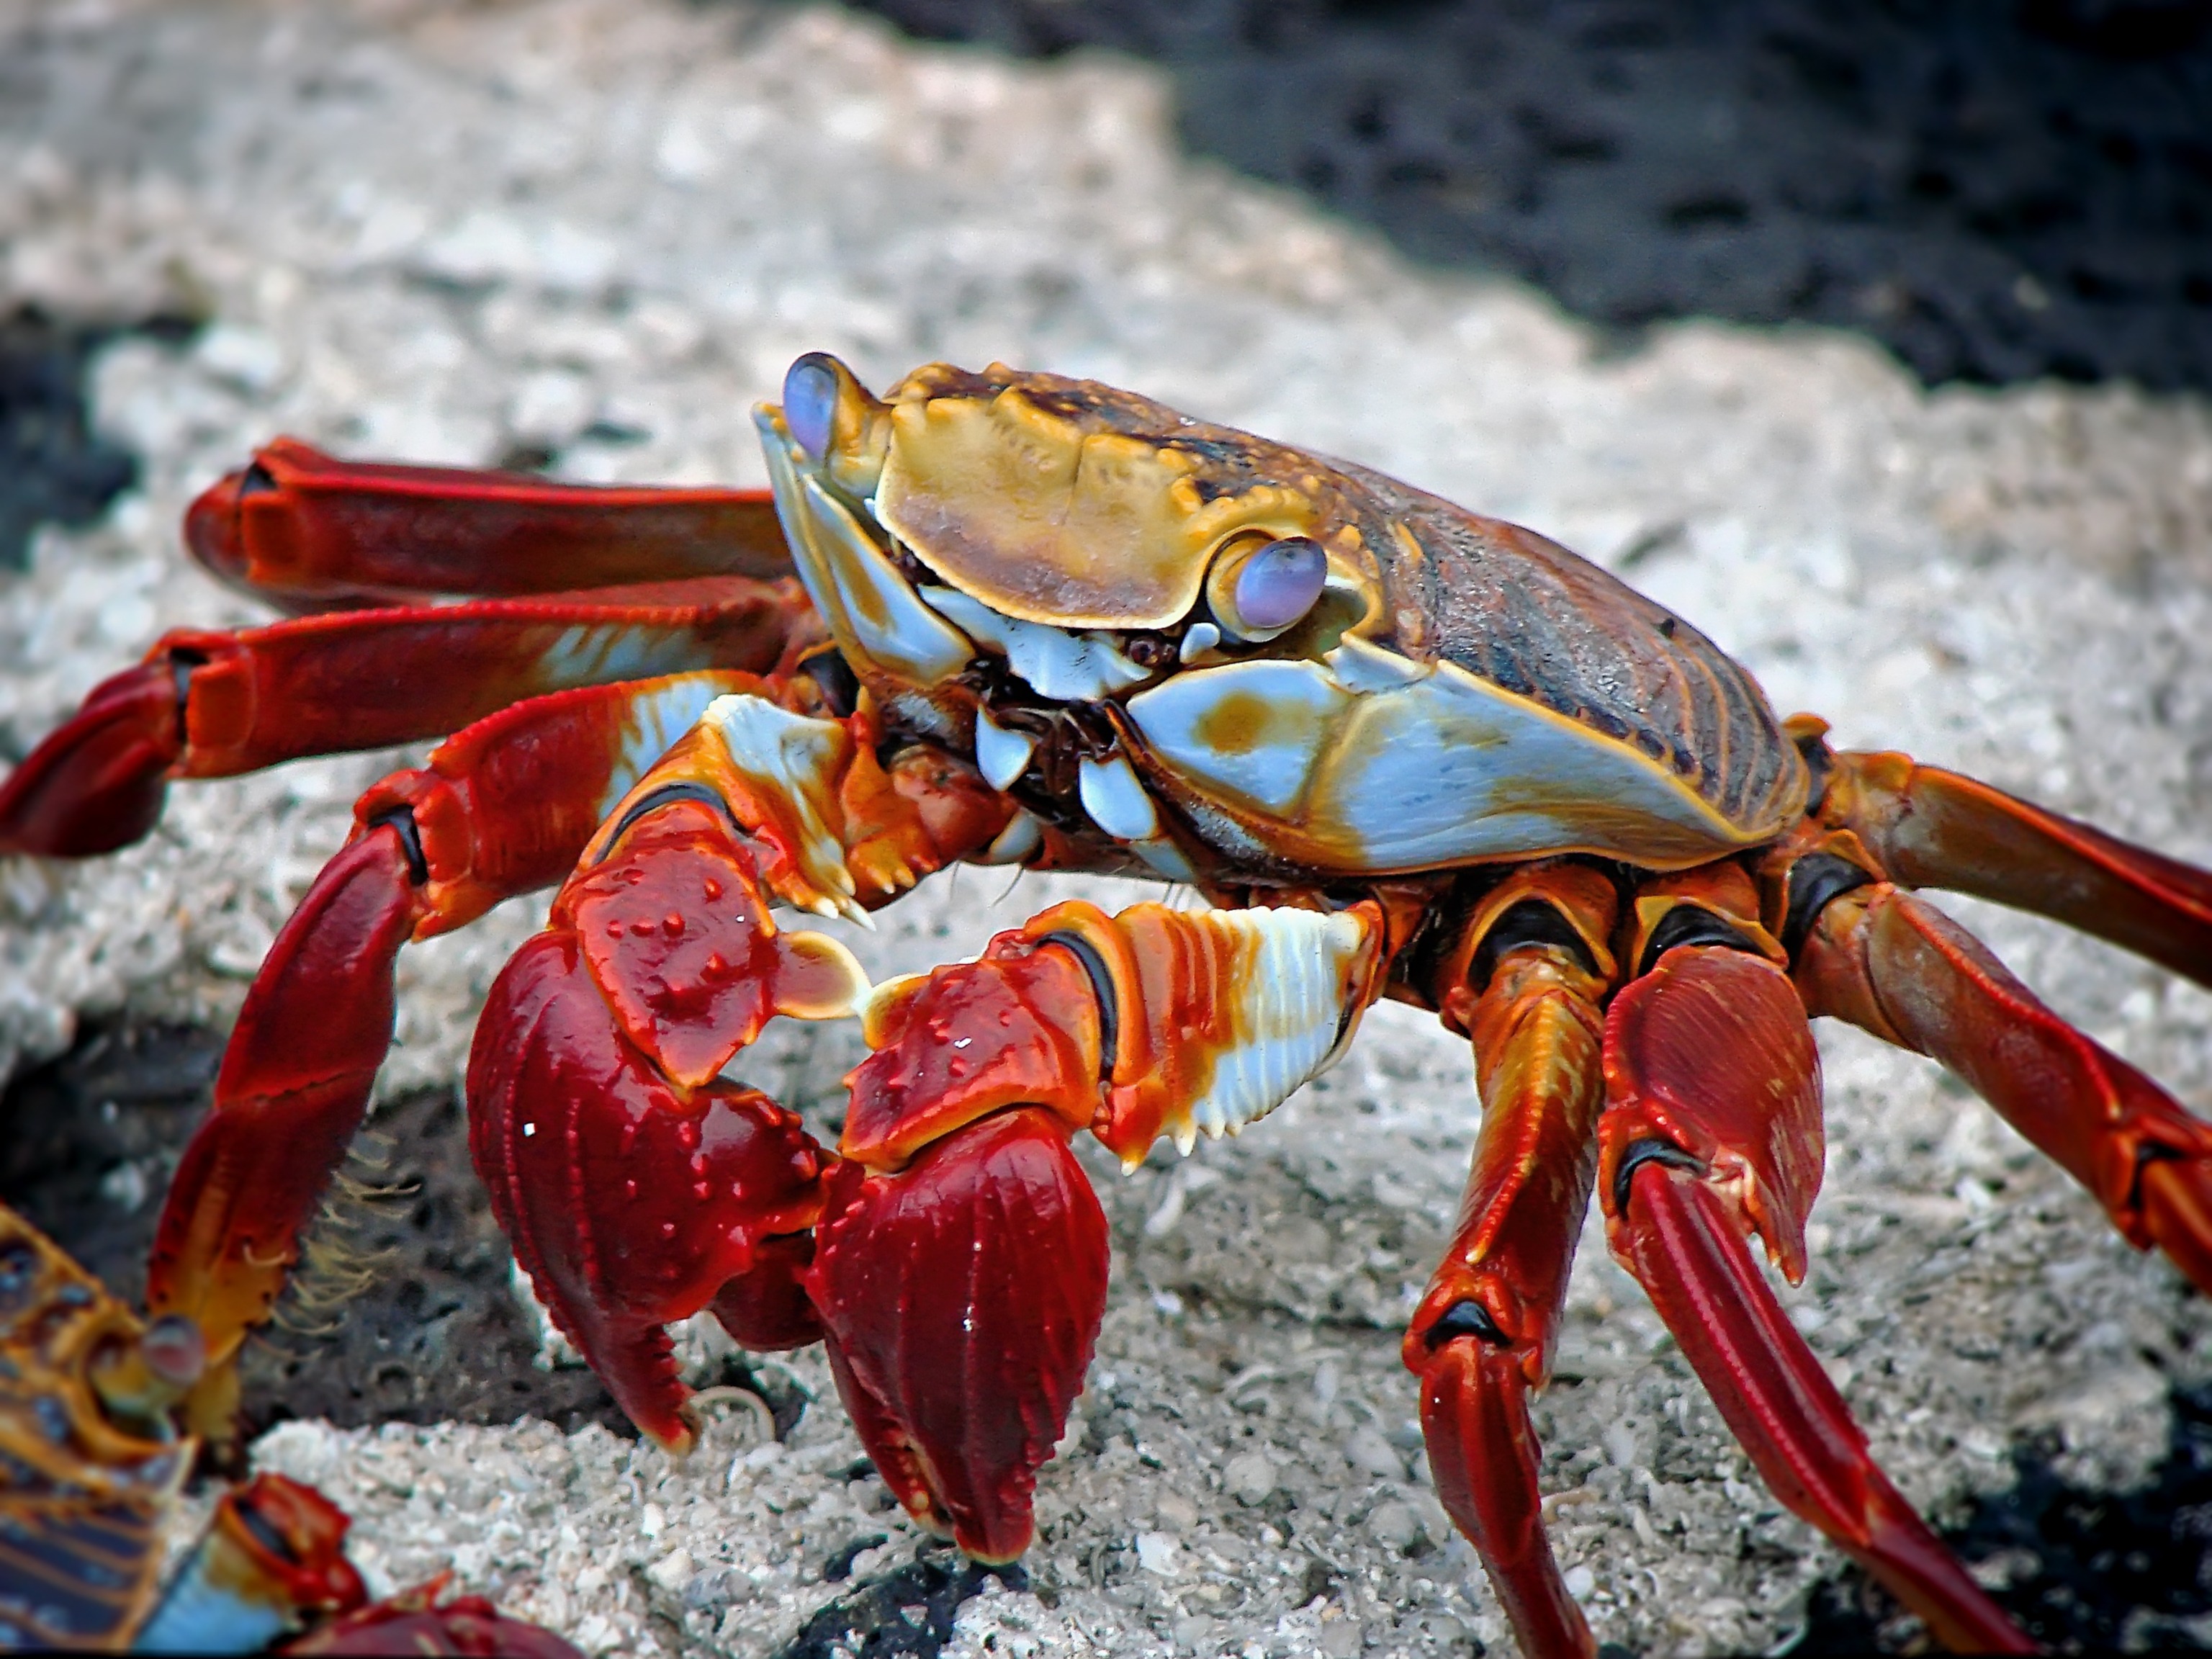 A close-up of a strigoi crab.